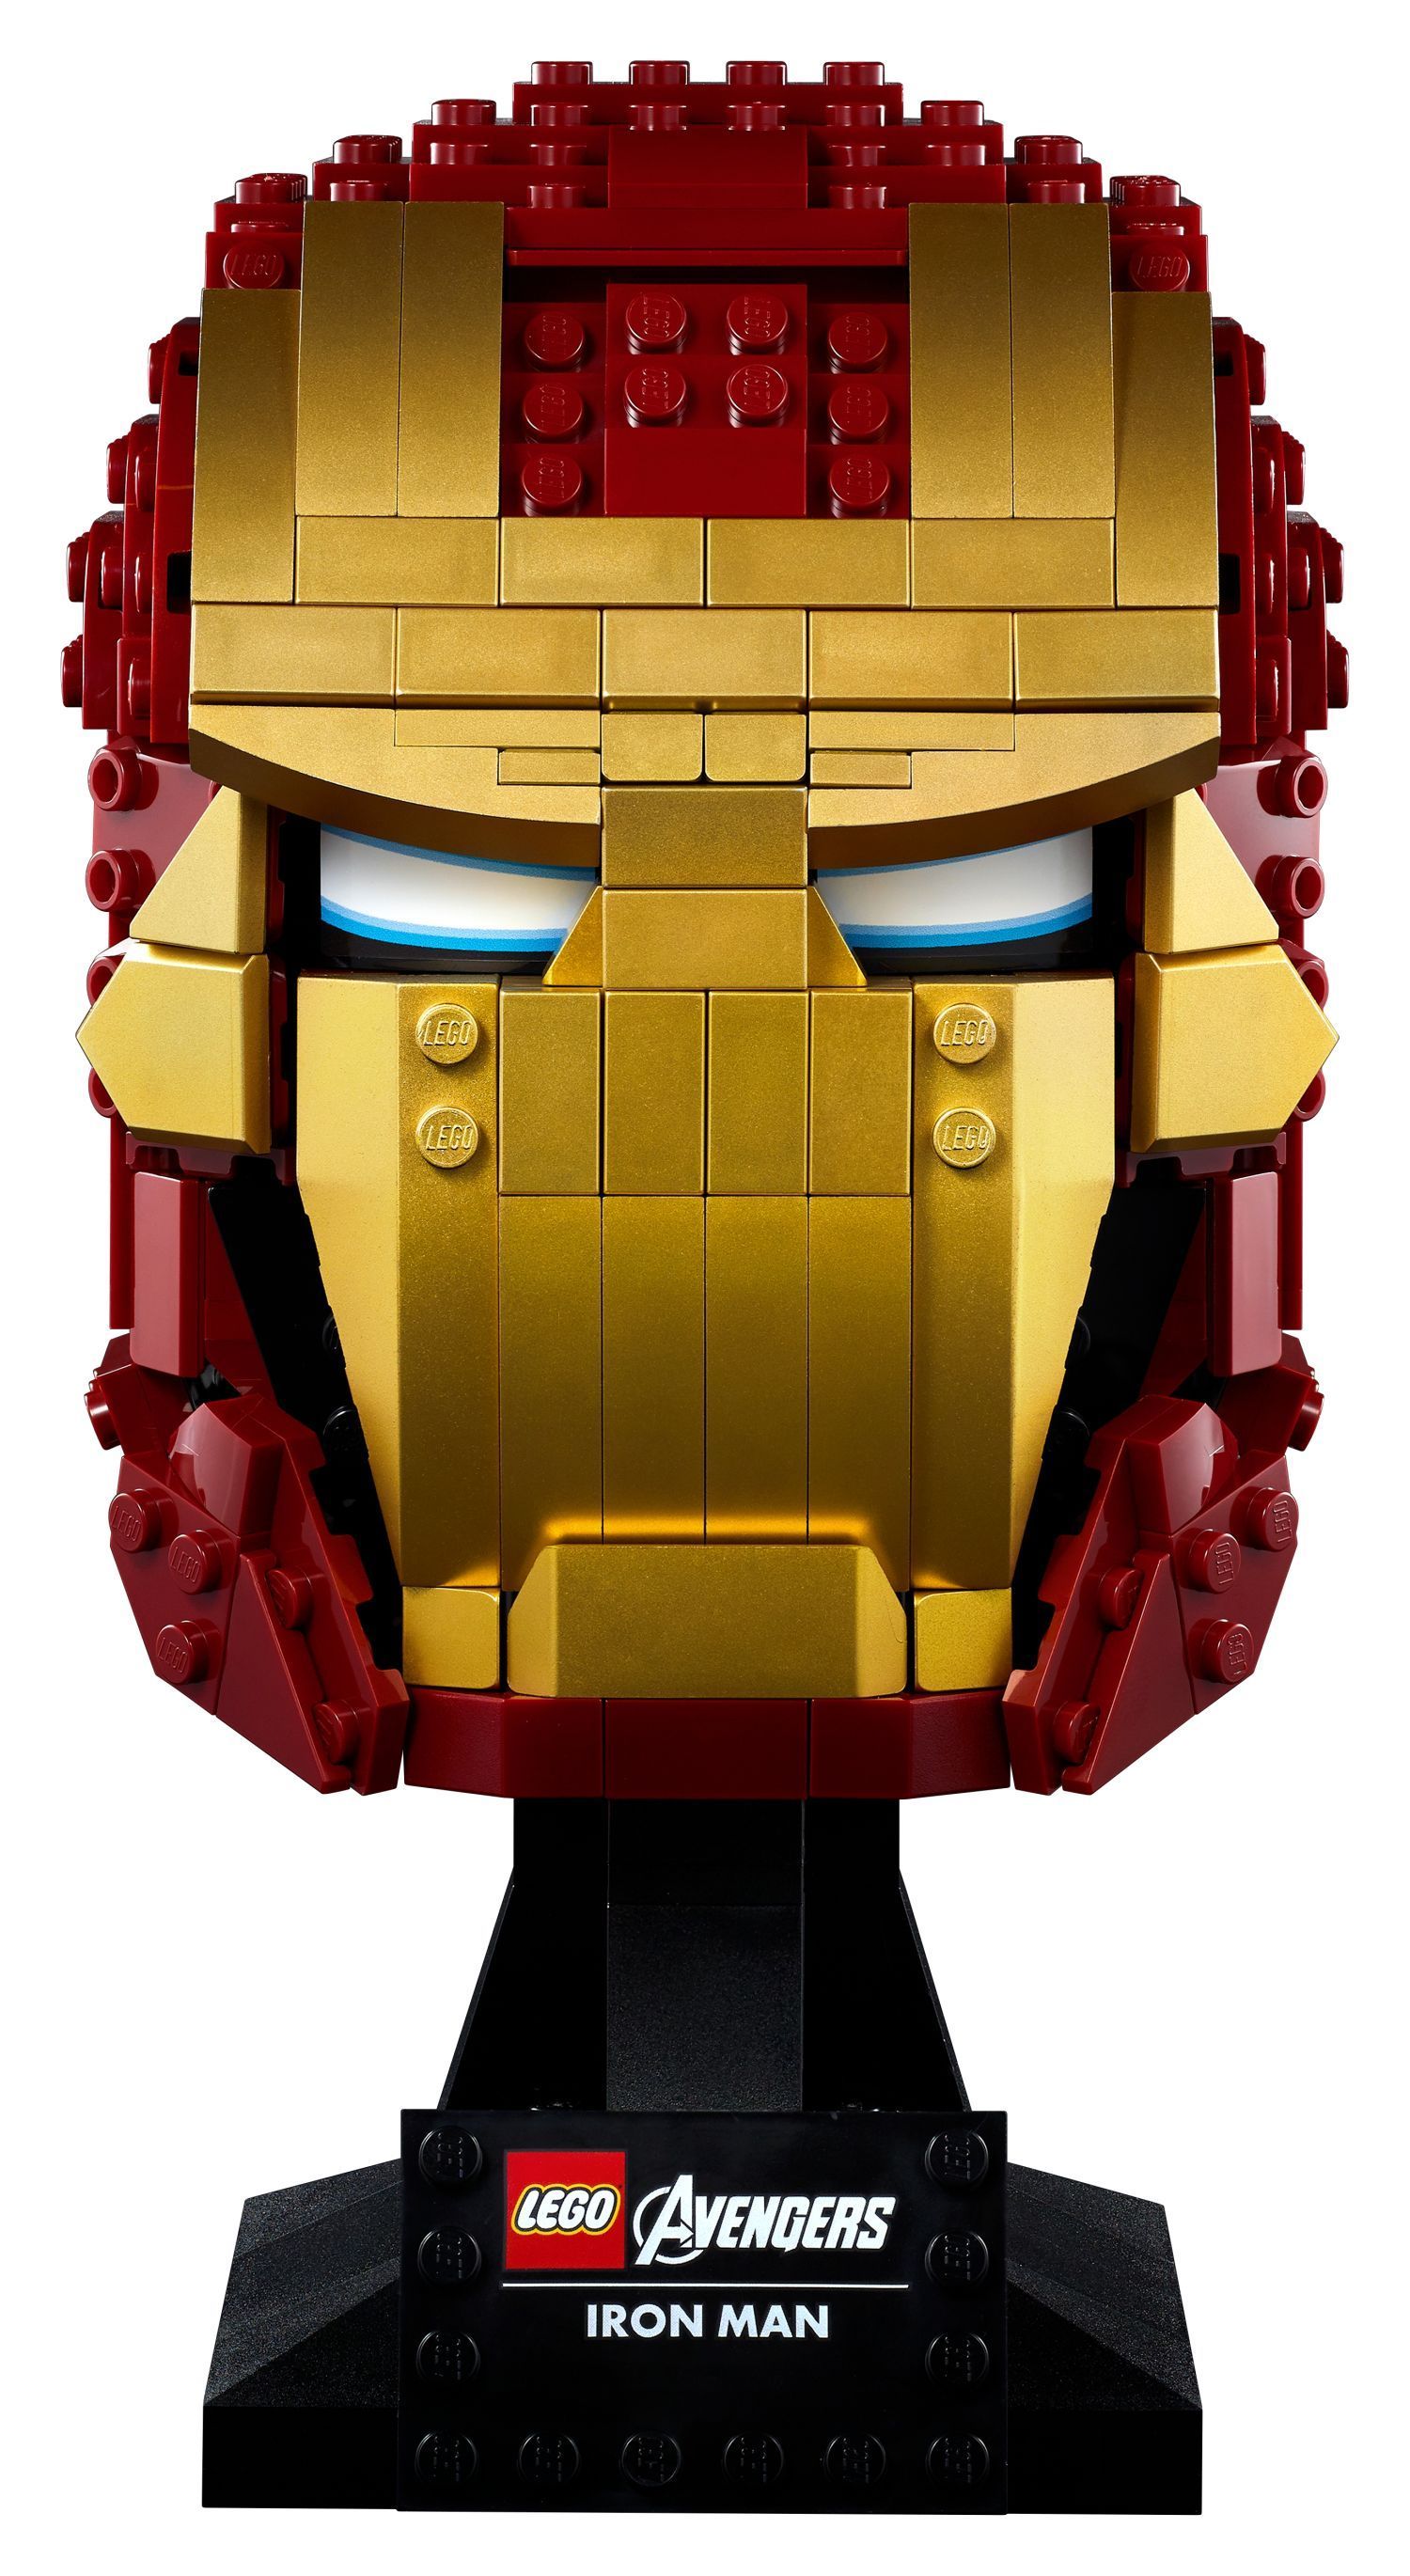 LEGO Marvel: alle Bilder zum Hulkbuster, Iron Man Helm und Avengers Tower